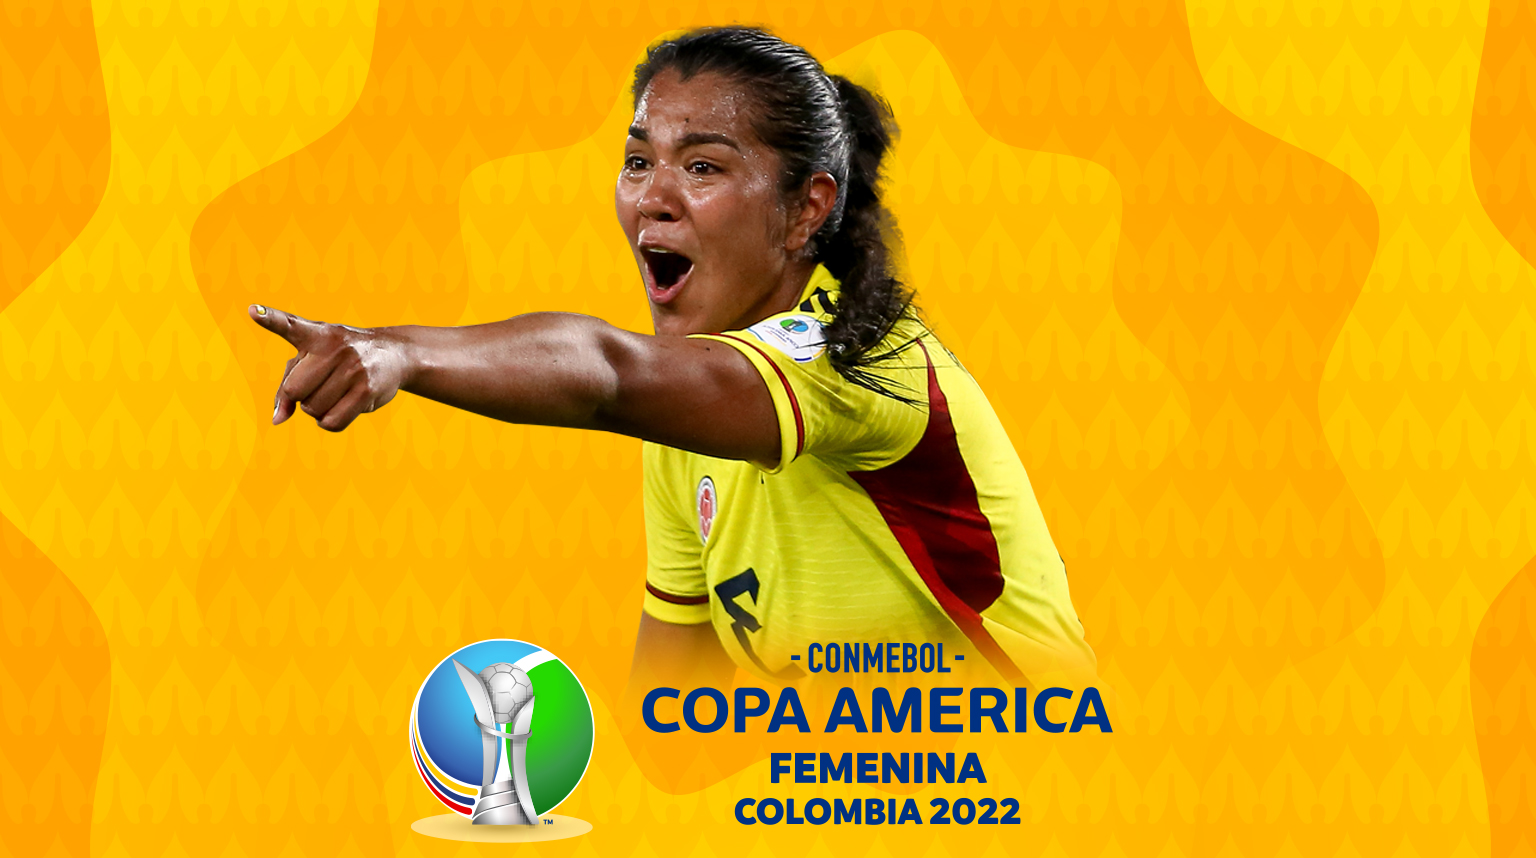 Copa América Femenina: tenacidad, emoción y pasión